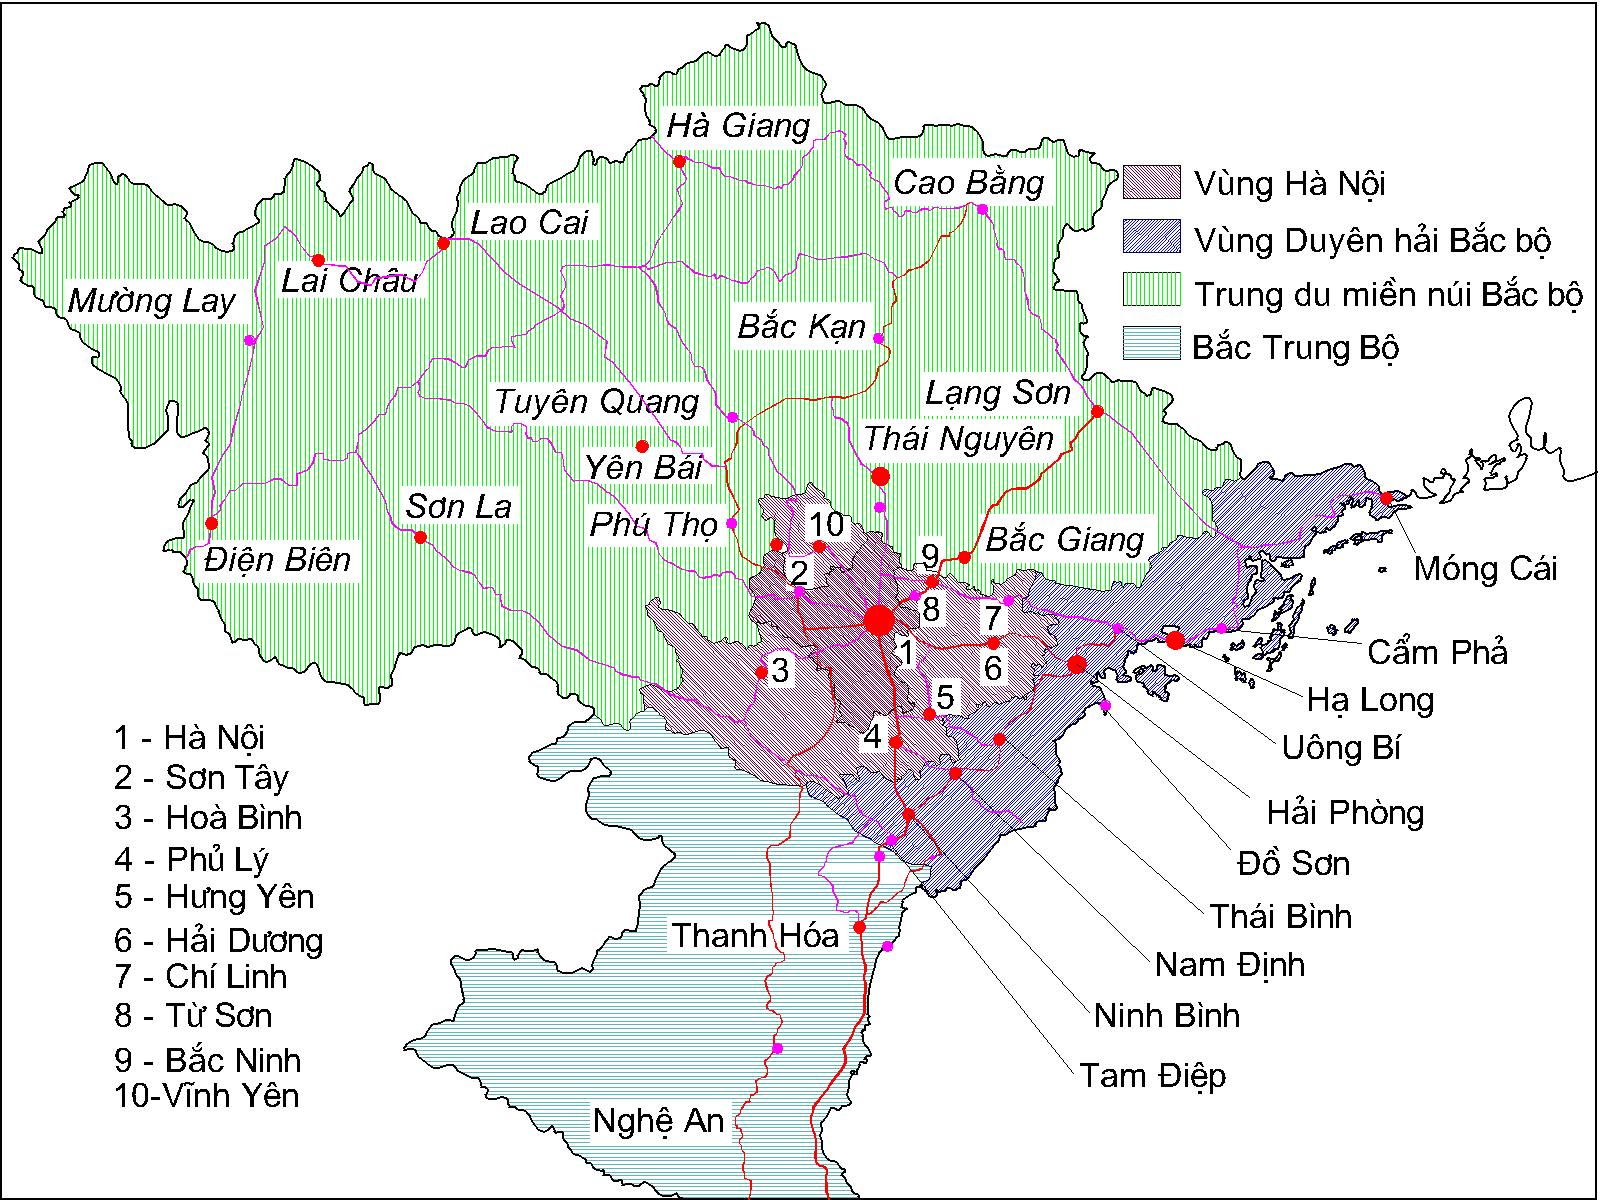 Bản đồ miền Bắc Việt Nam chia theo khu vực kinh tế